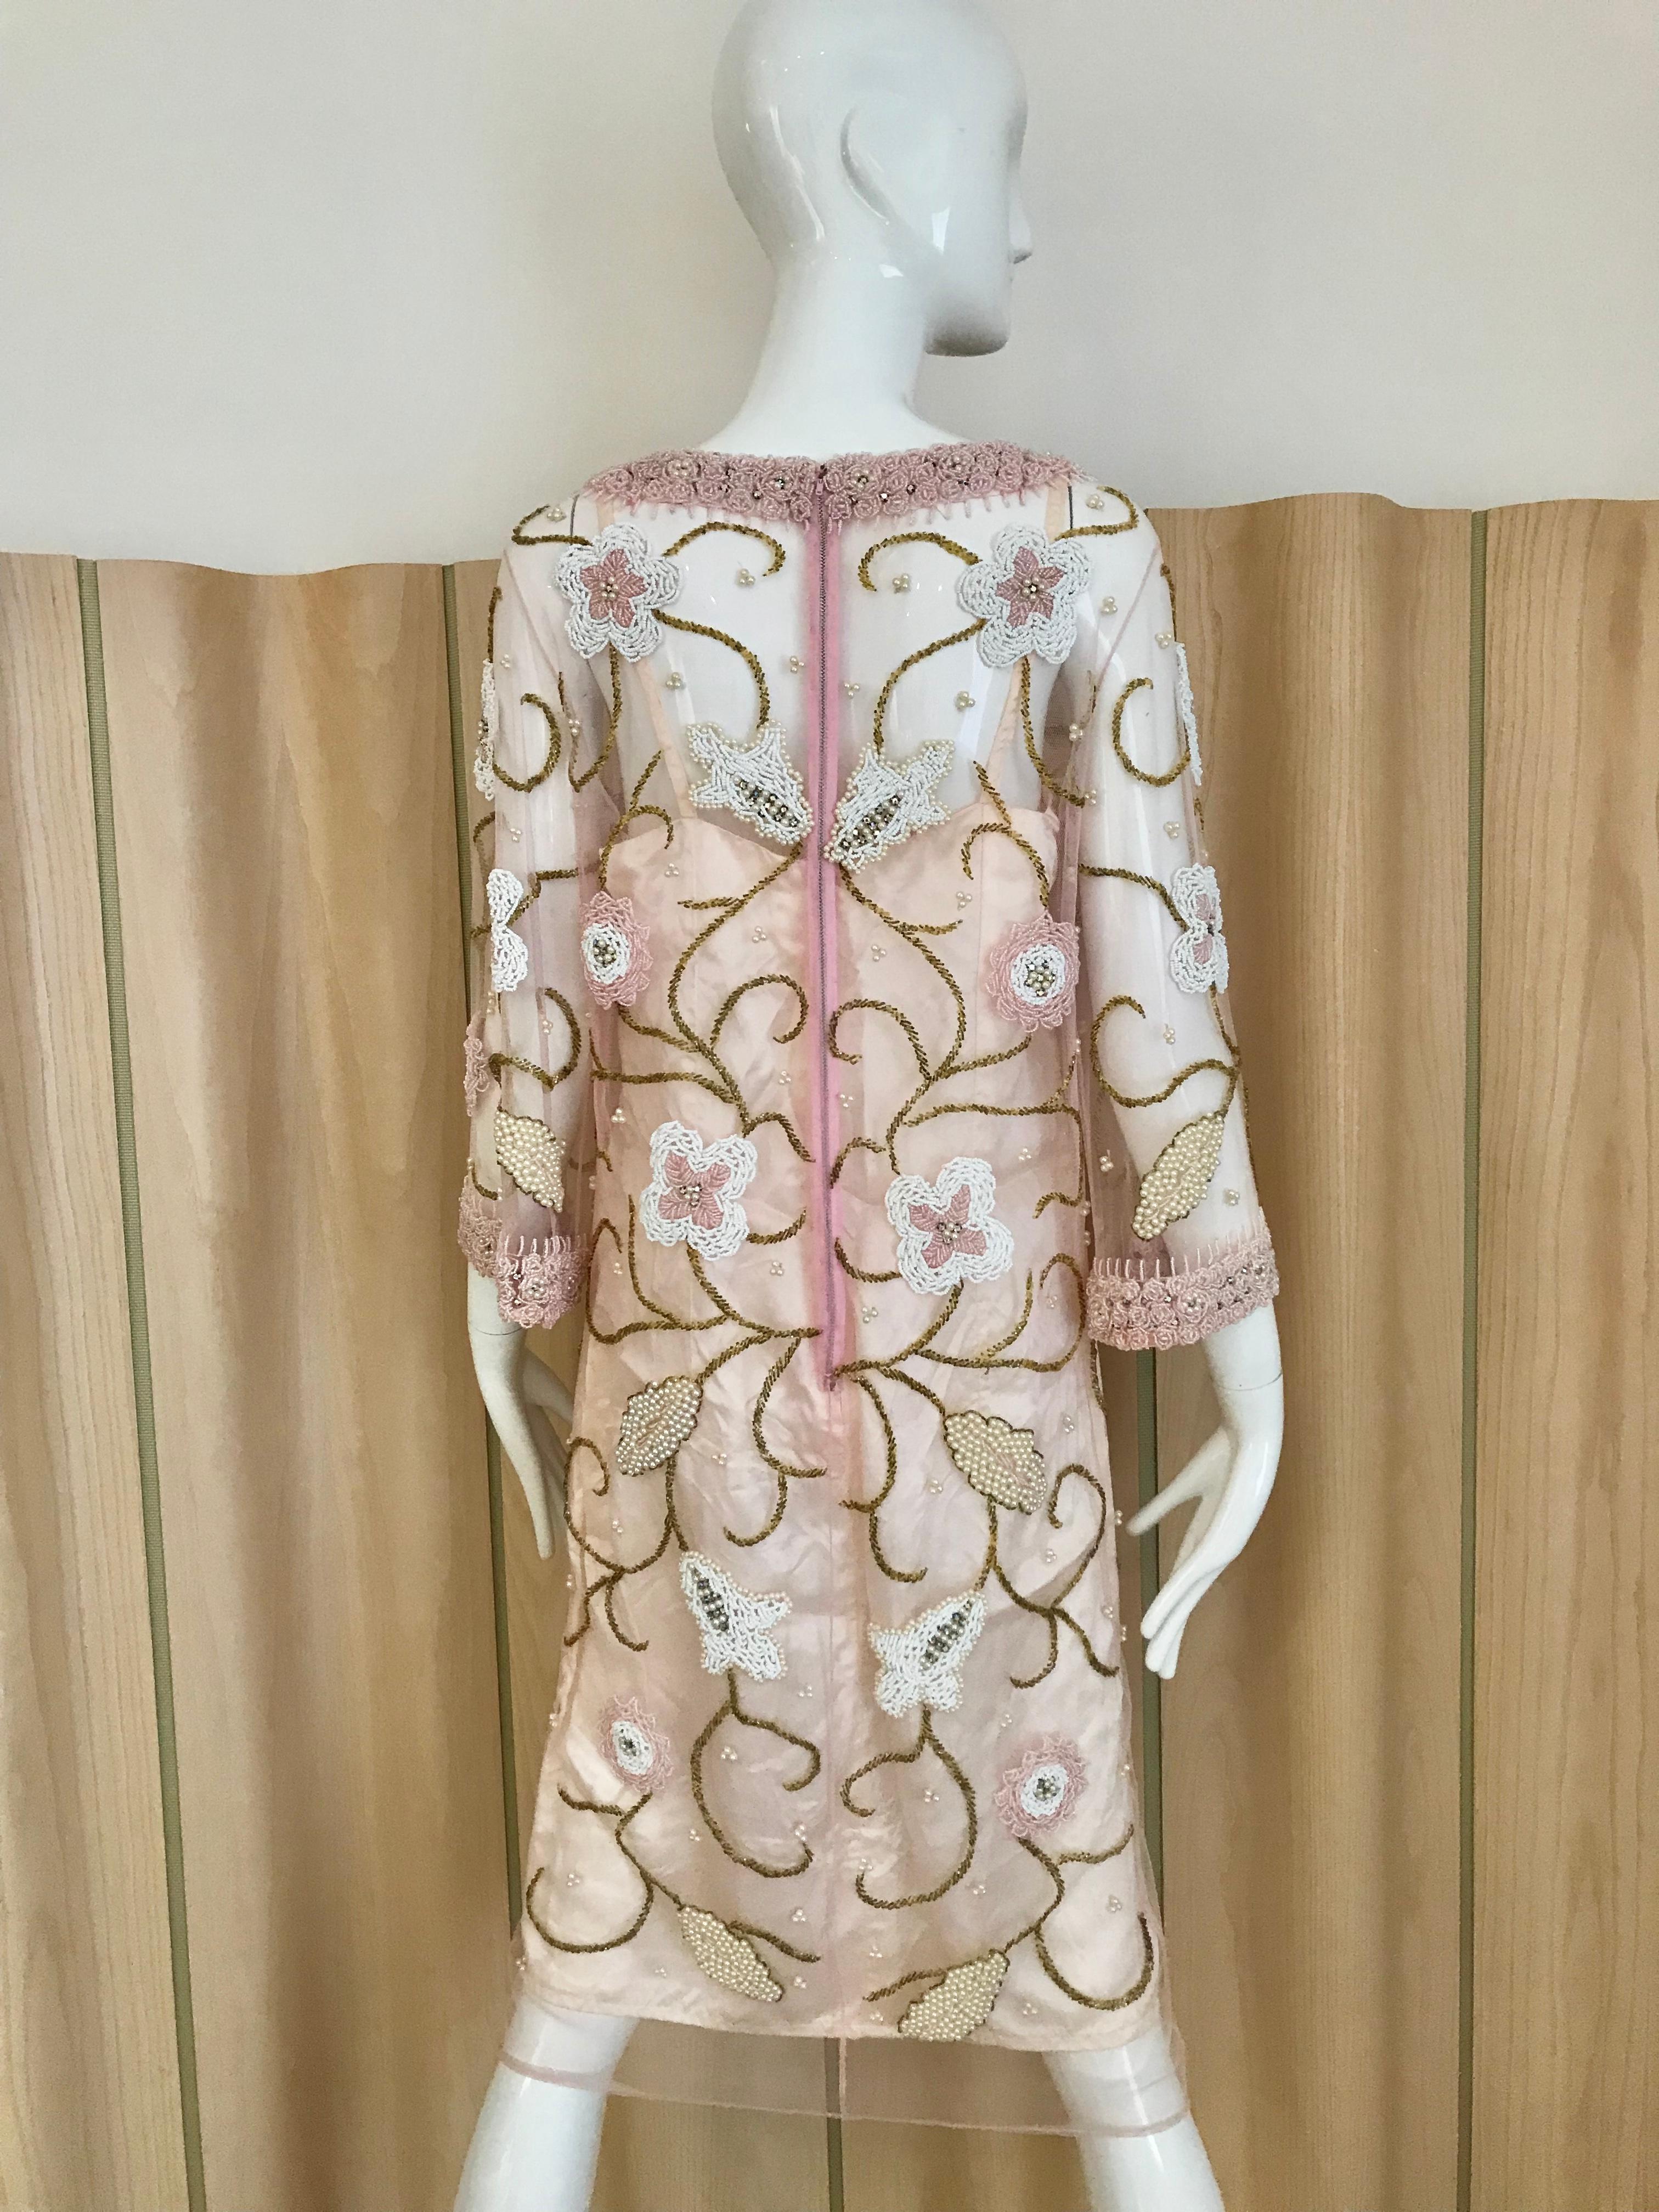 Magnifique tunique vintage des années 60 en maille transparente rose perlée de perles de fleurs blanches, roses et dorées. Le col et les manches sont perlés de perles roses. Parfait pour un cocktail.
La tunique est livrée avec un slip.  
Buste :  38